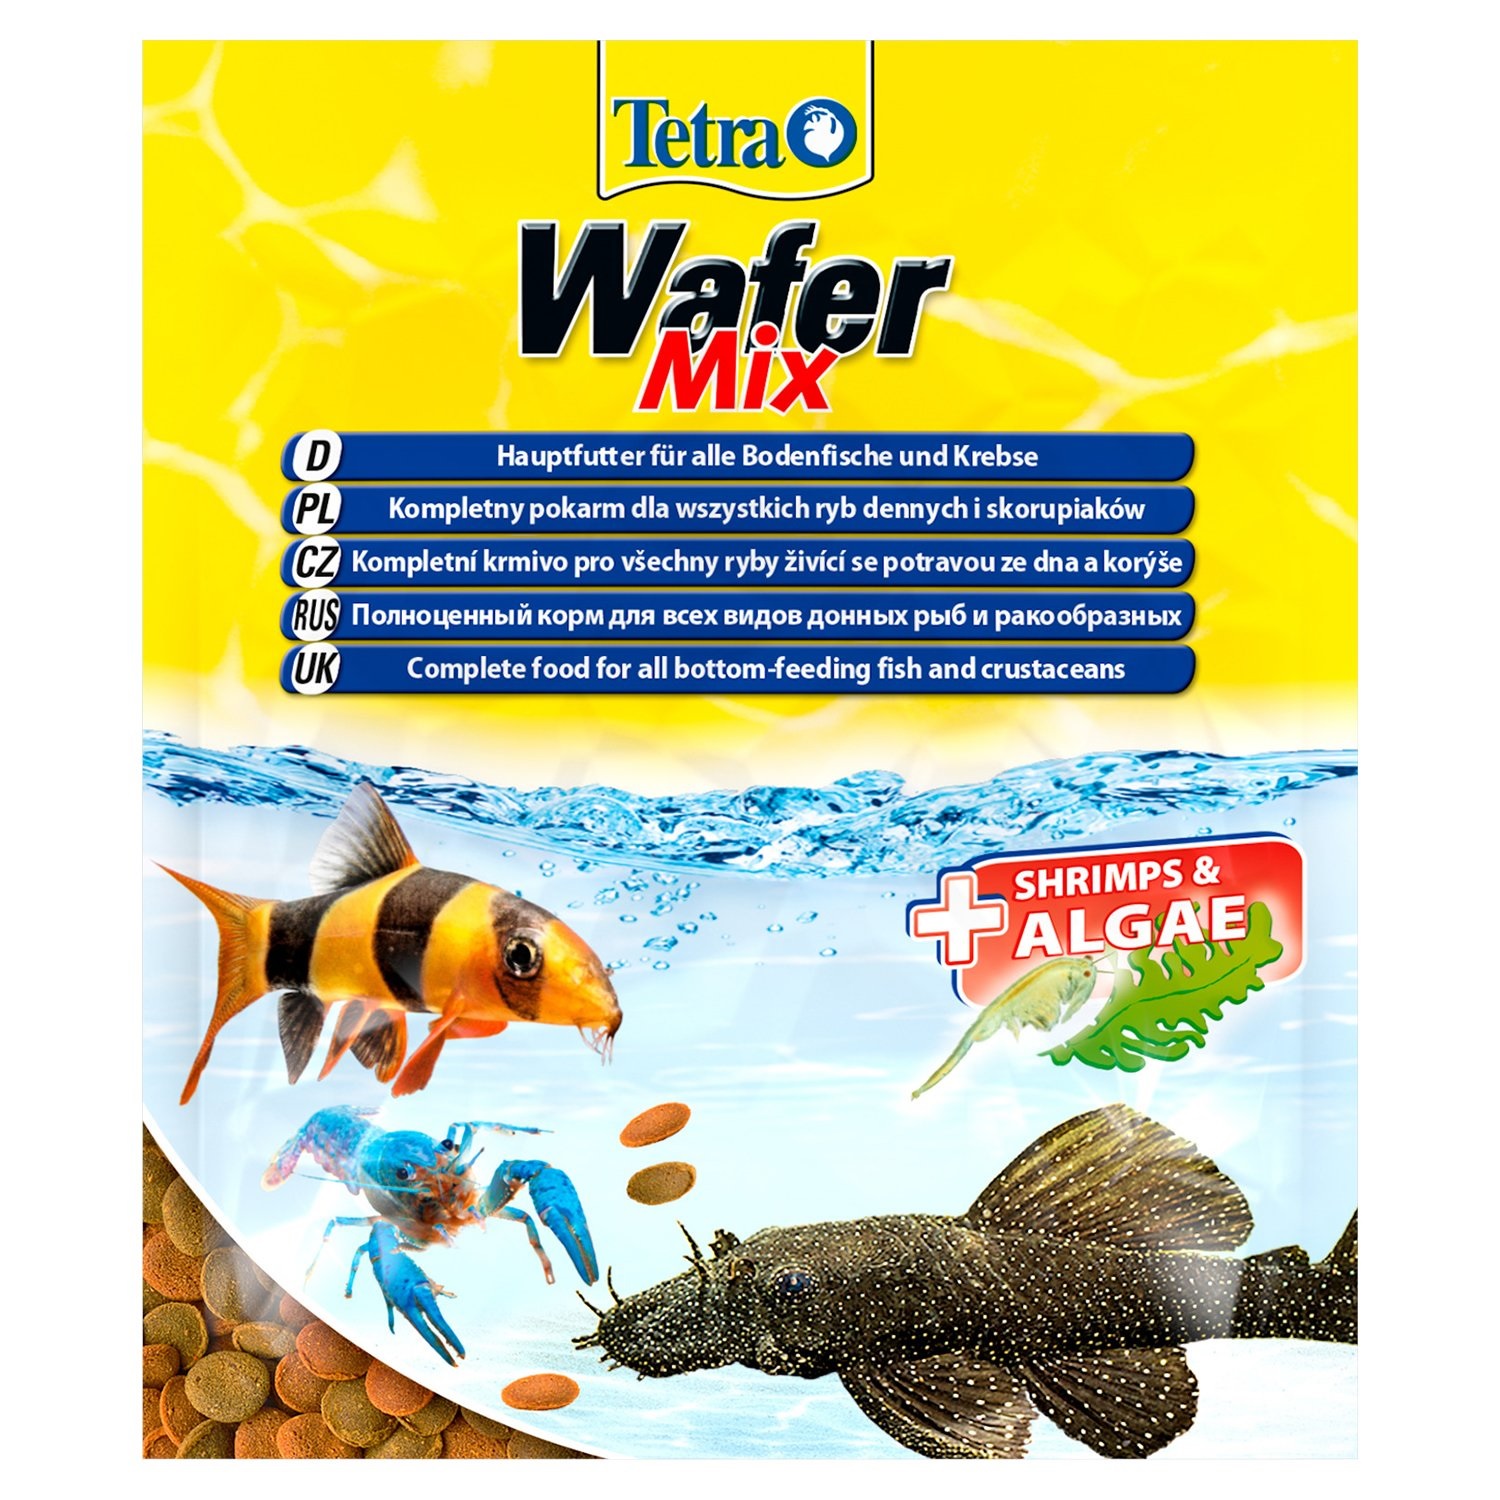 Корм чипсы для всех донных рыб Tetra wafermix 15 г